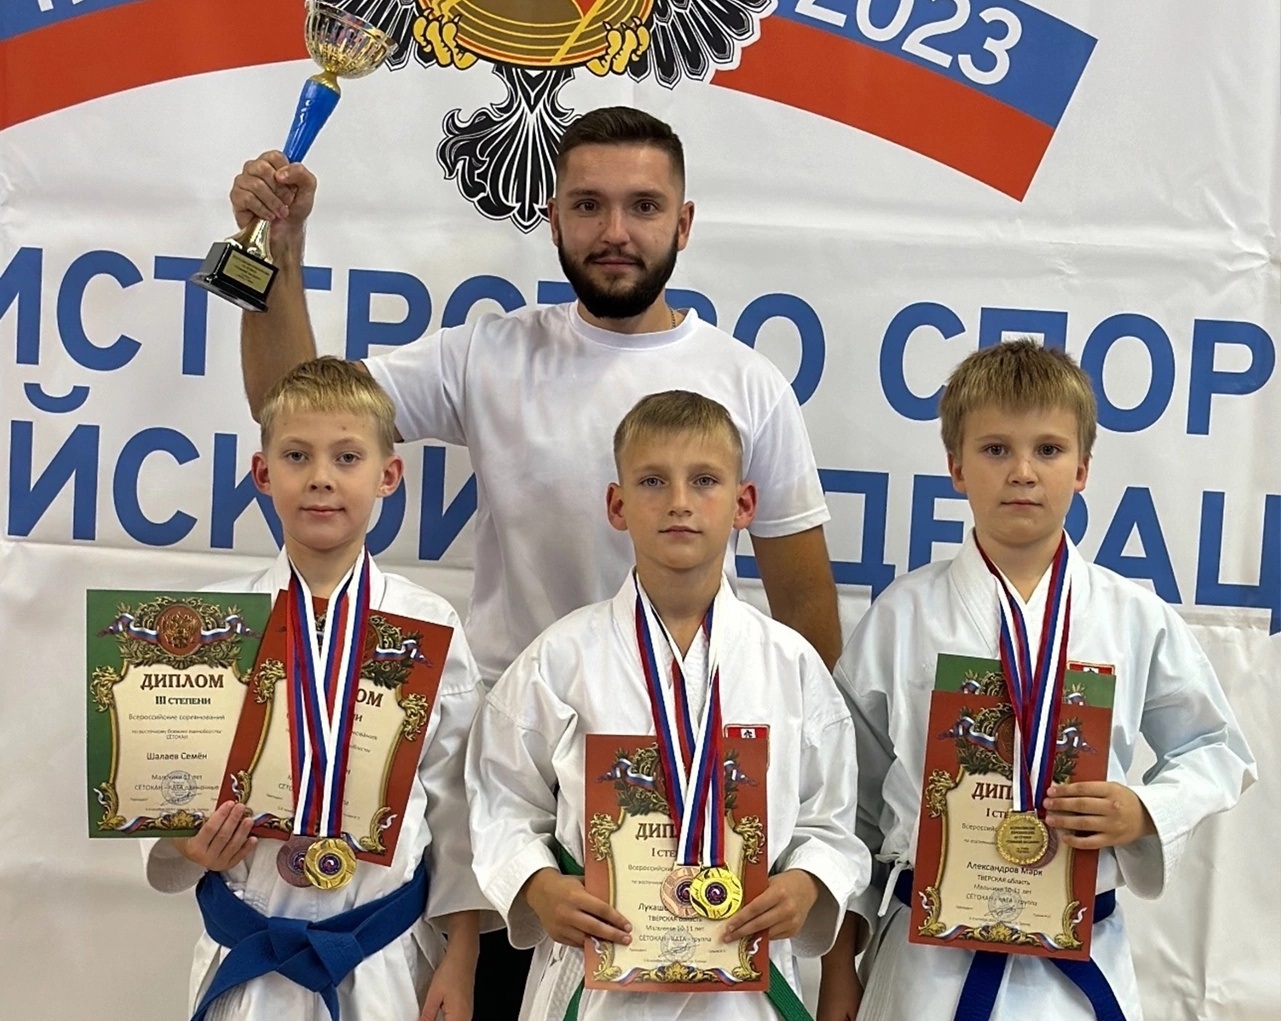 Каратисты Твери и Удомли завоевали 16 медалей на всероссийском турнире